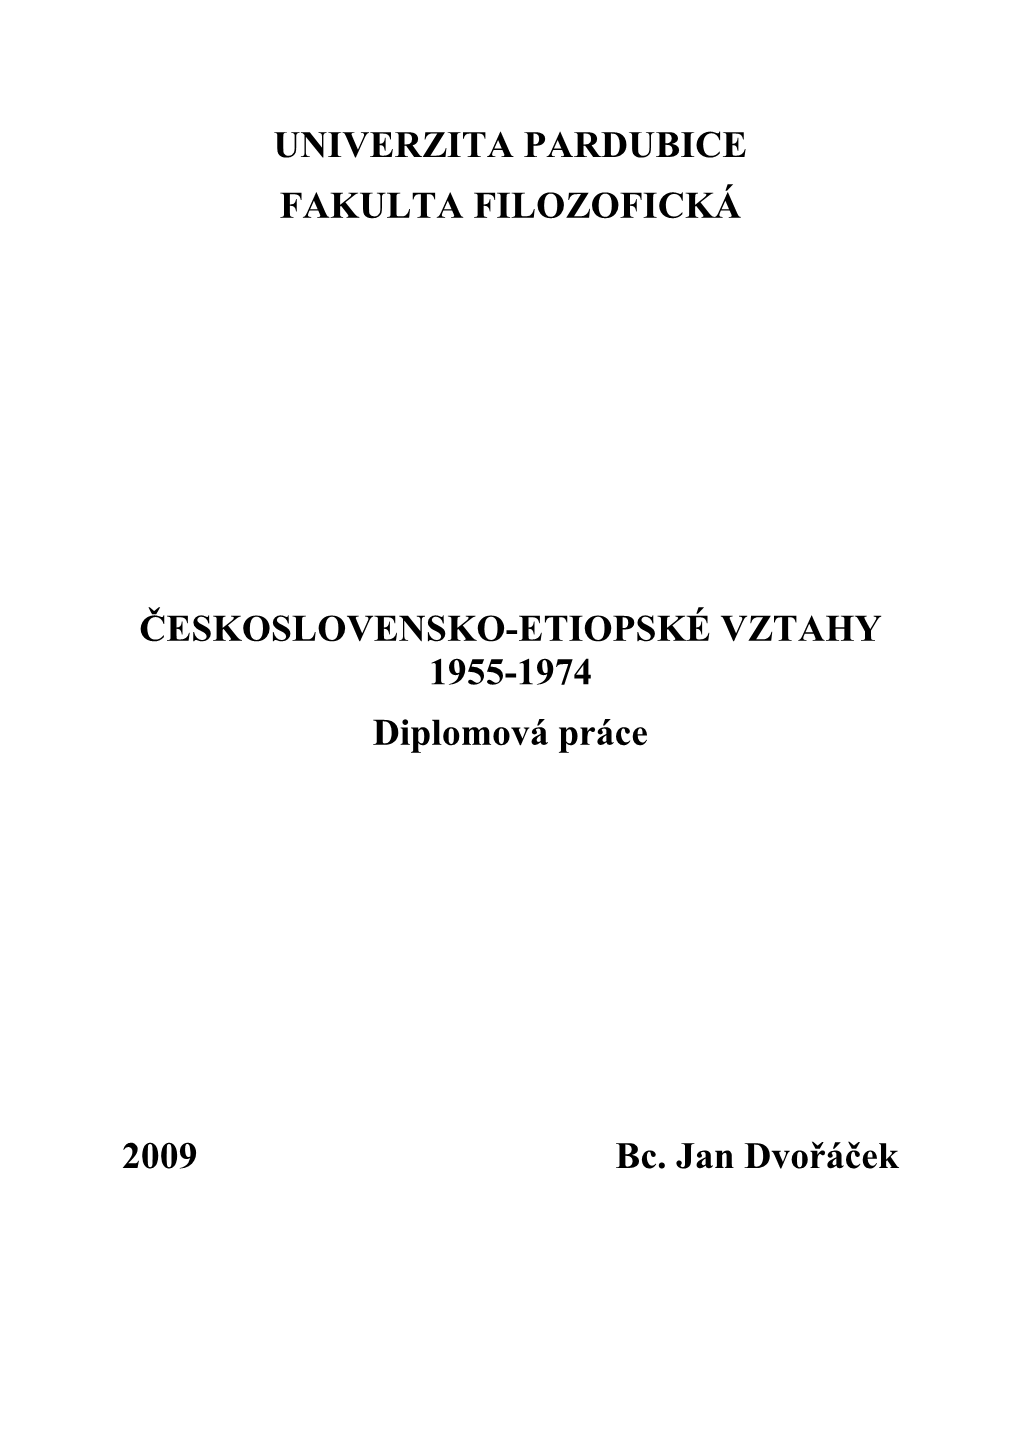 UNIVERZITA PARDUBICE FAKULTA FILOZOFICKÁ ČESKOSLOVENSKO-ETIOPSKÉ VZTAHY 1955-1974 Diplomová Práce 2009 Bc. Jan Dvořáček